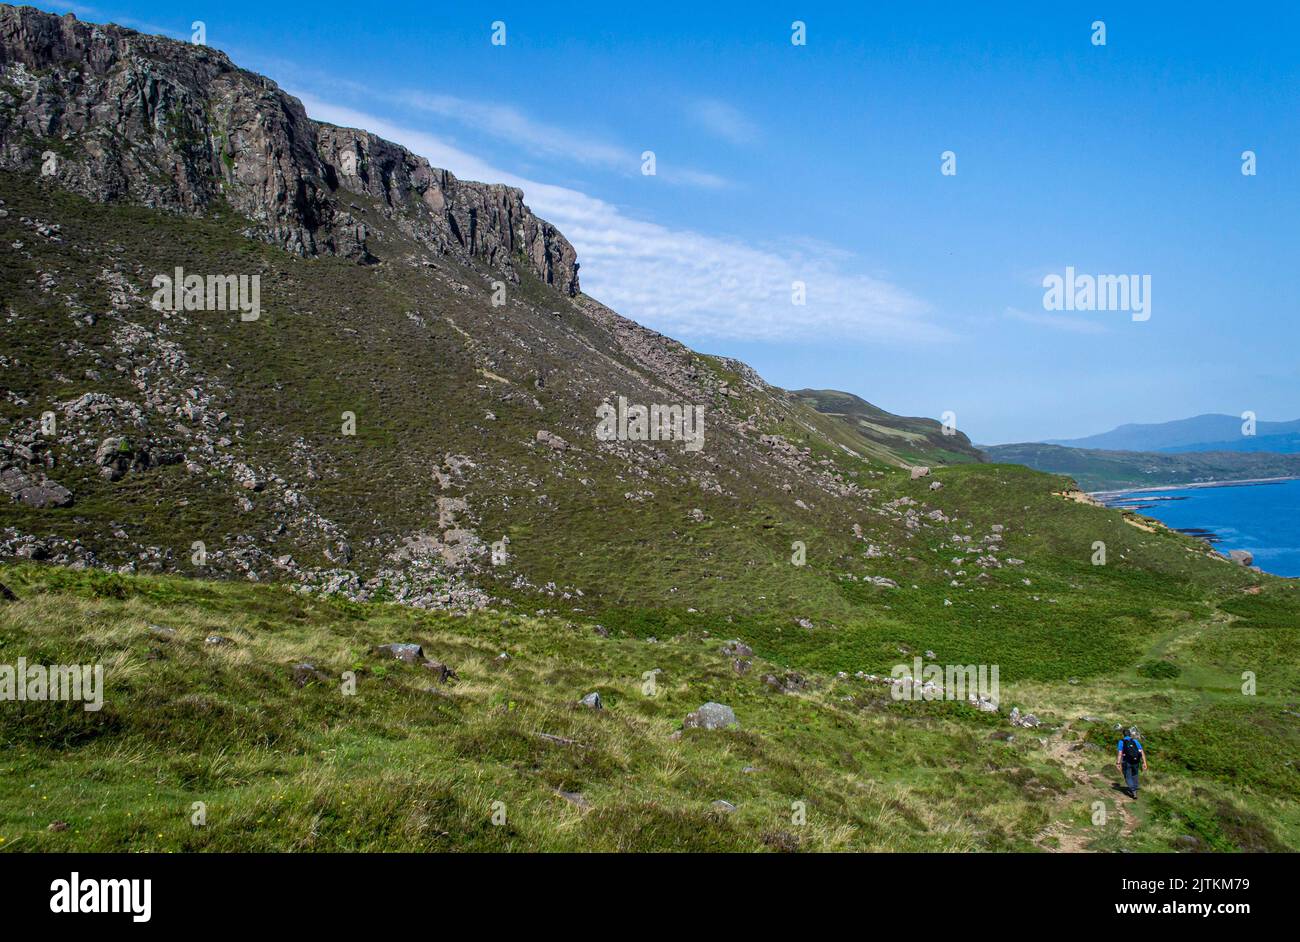 Vista della montagna presso la zona escursionistica Scotland Isle of Skye Suisnish in una giornata di sole. Foto Stock